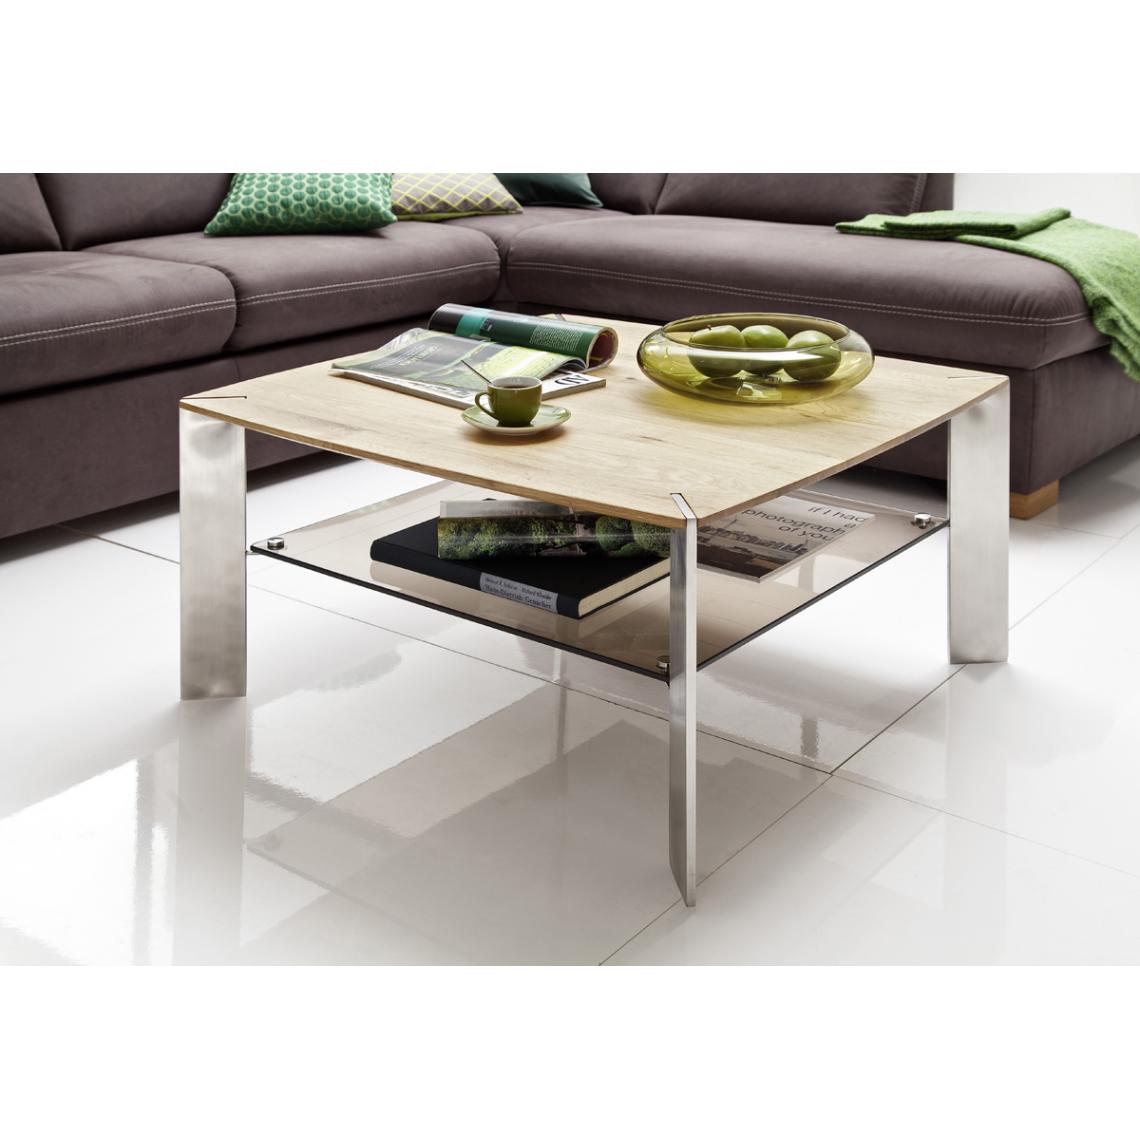 Pegane - Table basse en chêne massif et verre - L80 x H41 x P80 cm - Tables basses